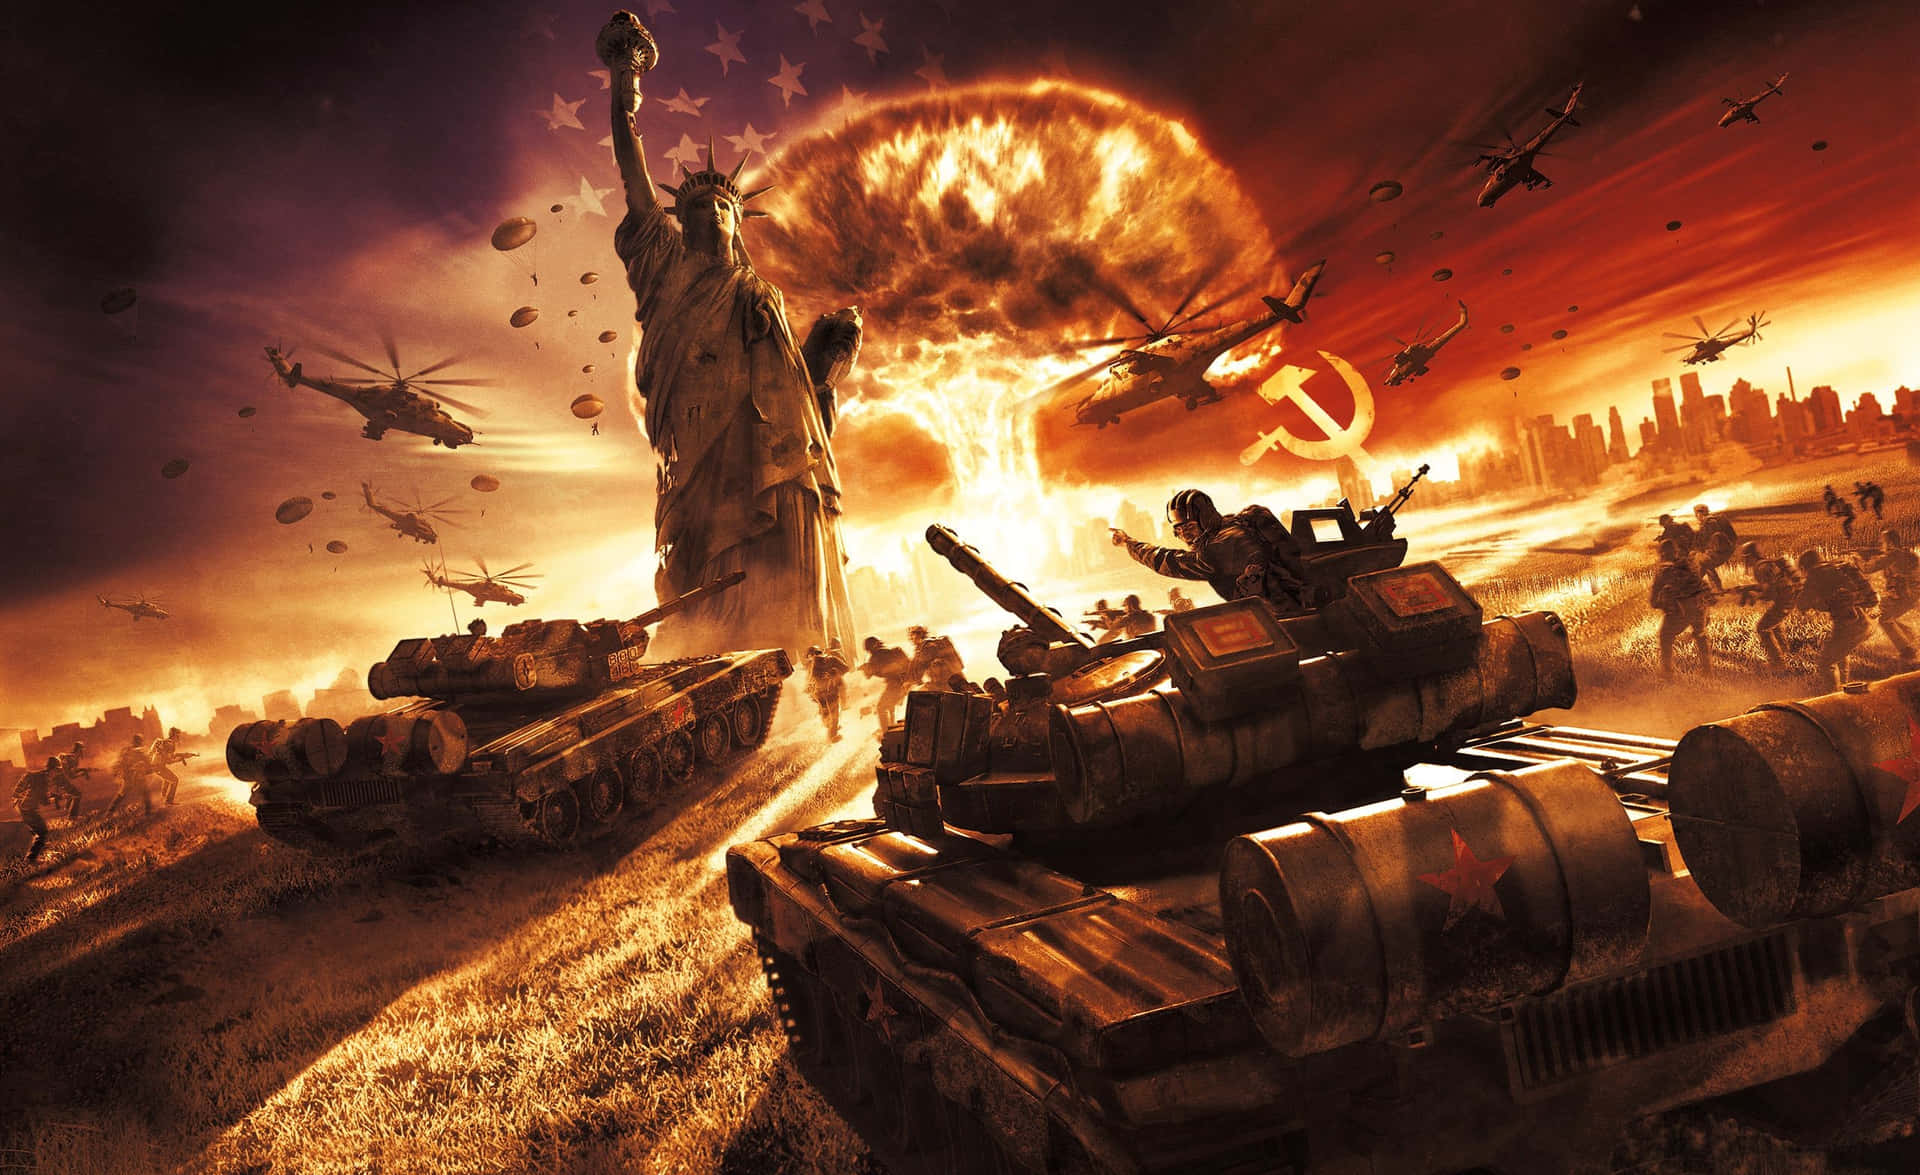 Apocalyptic_ Warfare_ Scene Wallpaper